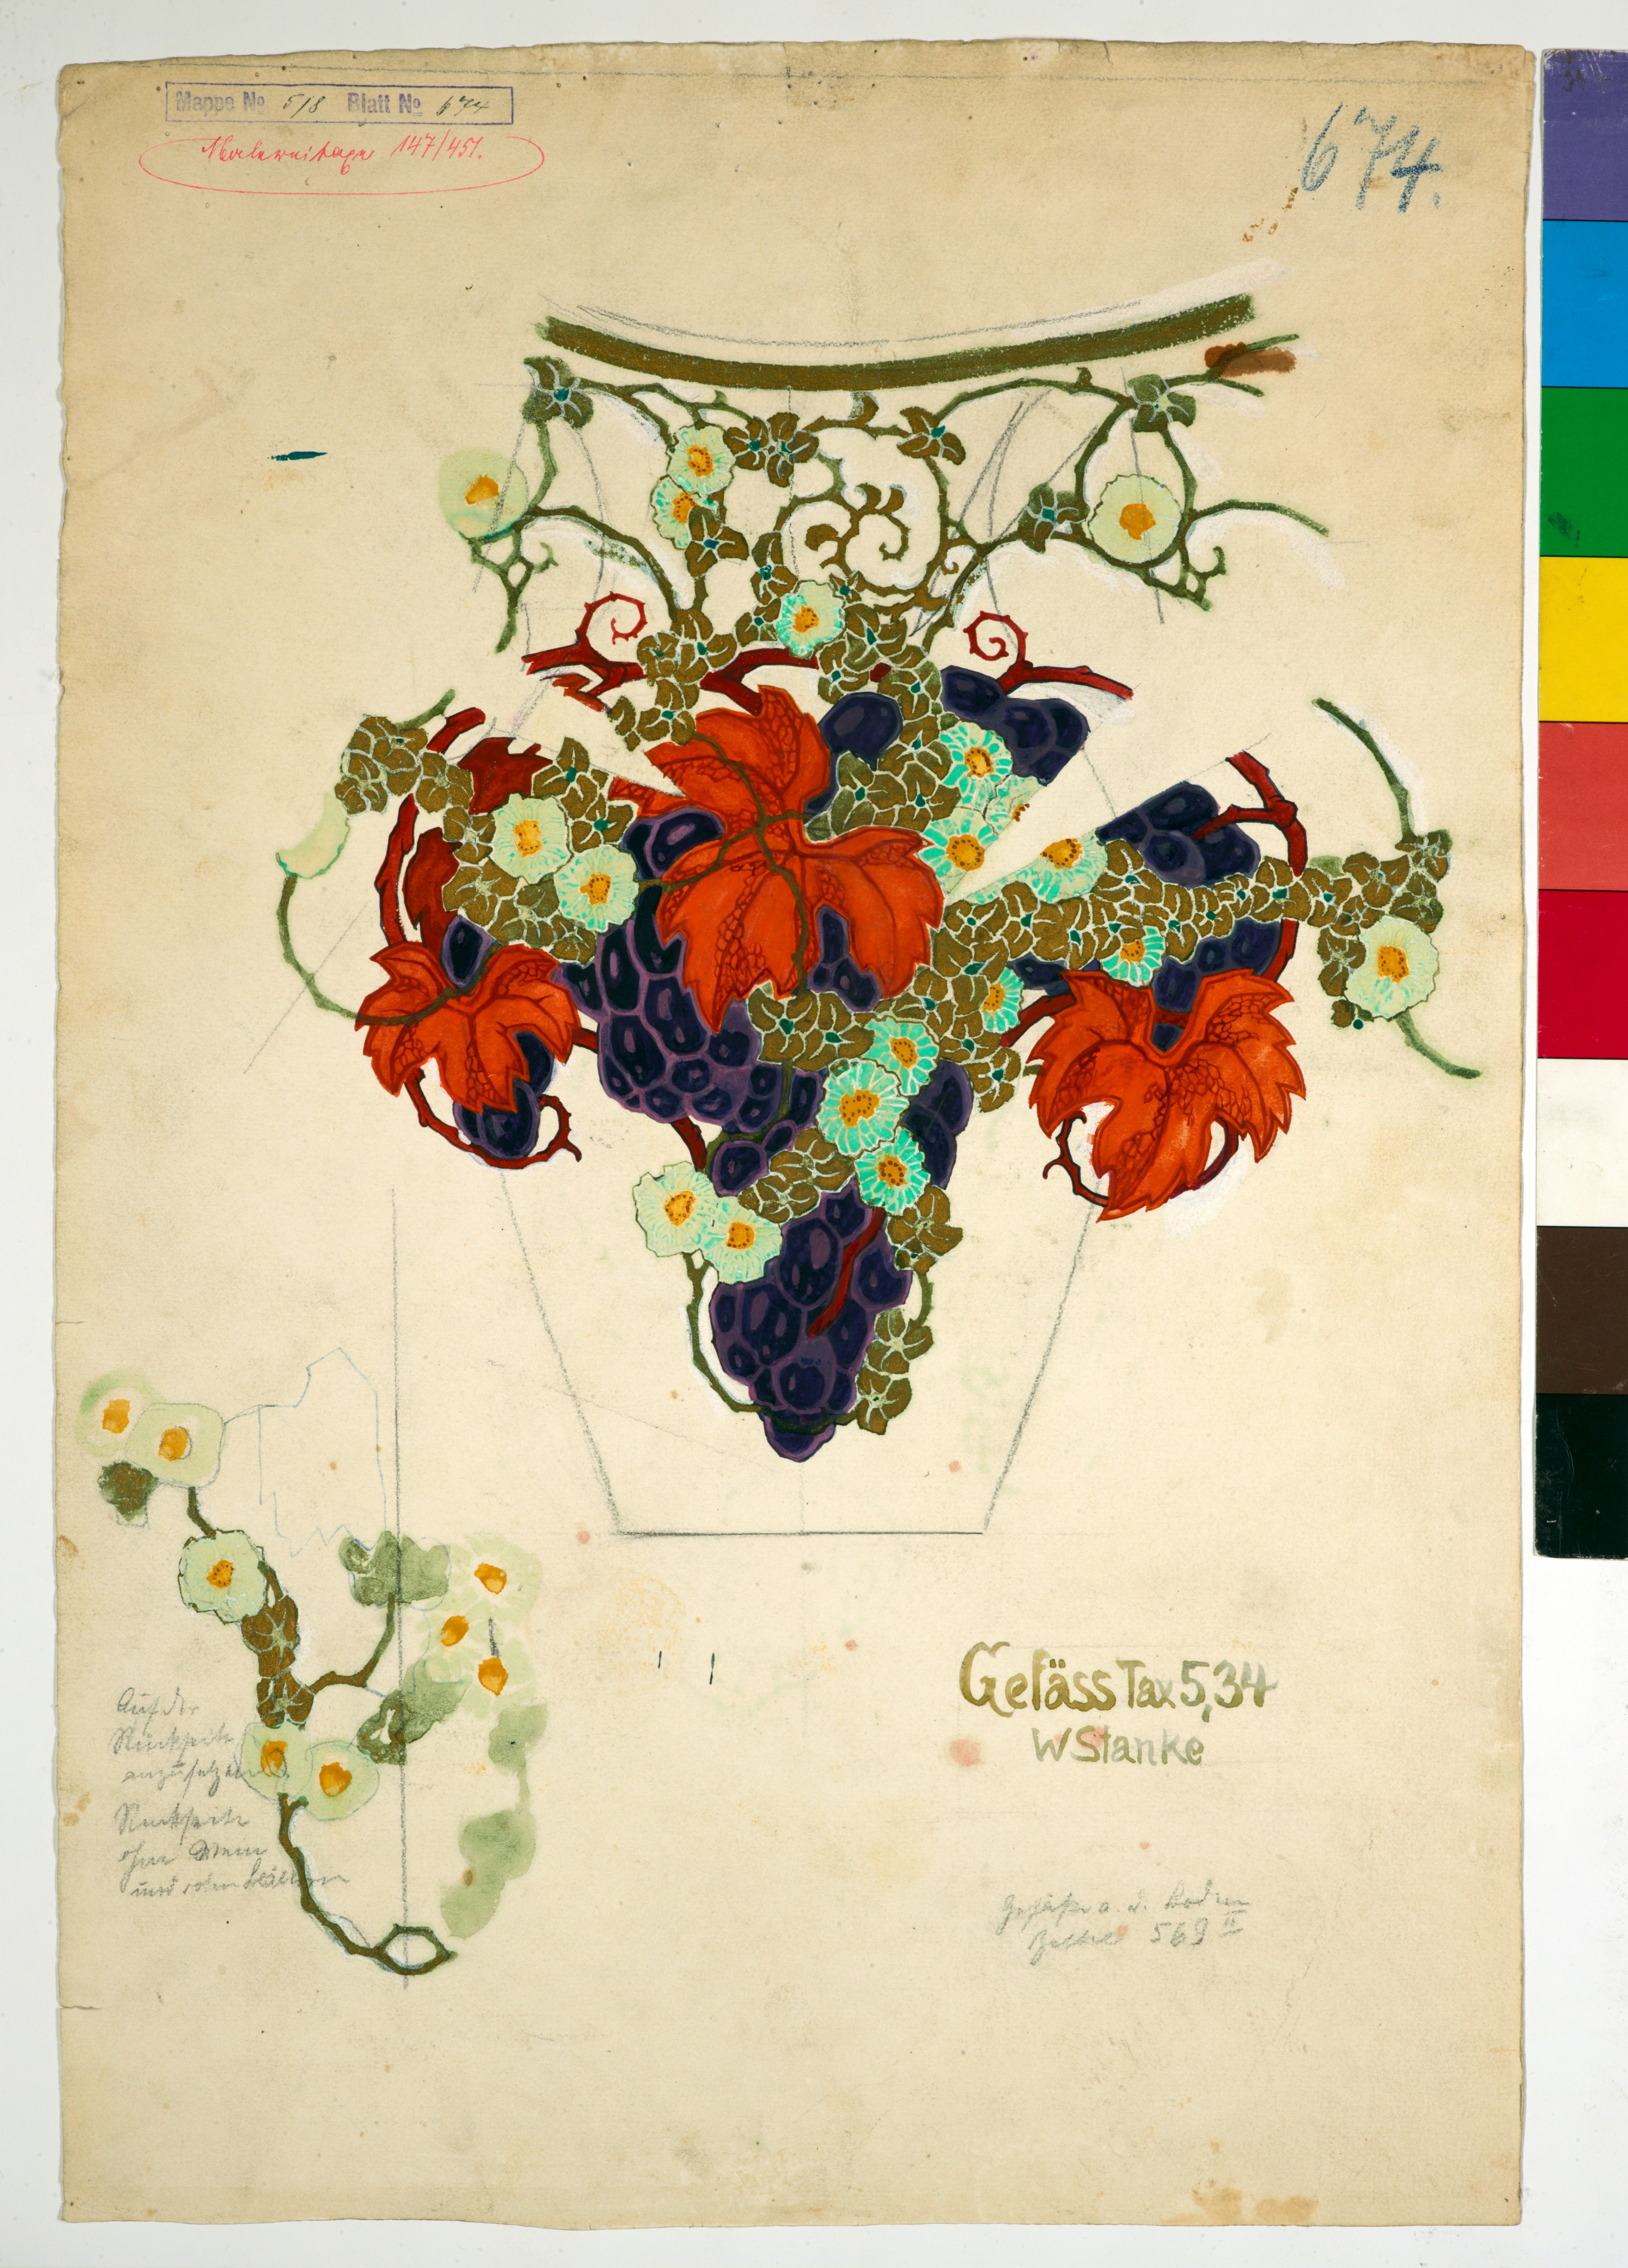 Stanke, Willy: Entwurf für eine Vase mit Trauben und Weinlaubdekor, nach 1914, KPM Z 133.25. (Stiftung Preußische Schlösser und Gärten Berlin-Brandenburg CC BY-NC-SA)